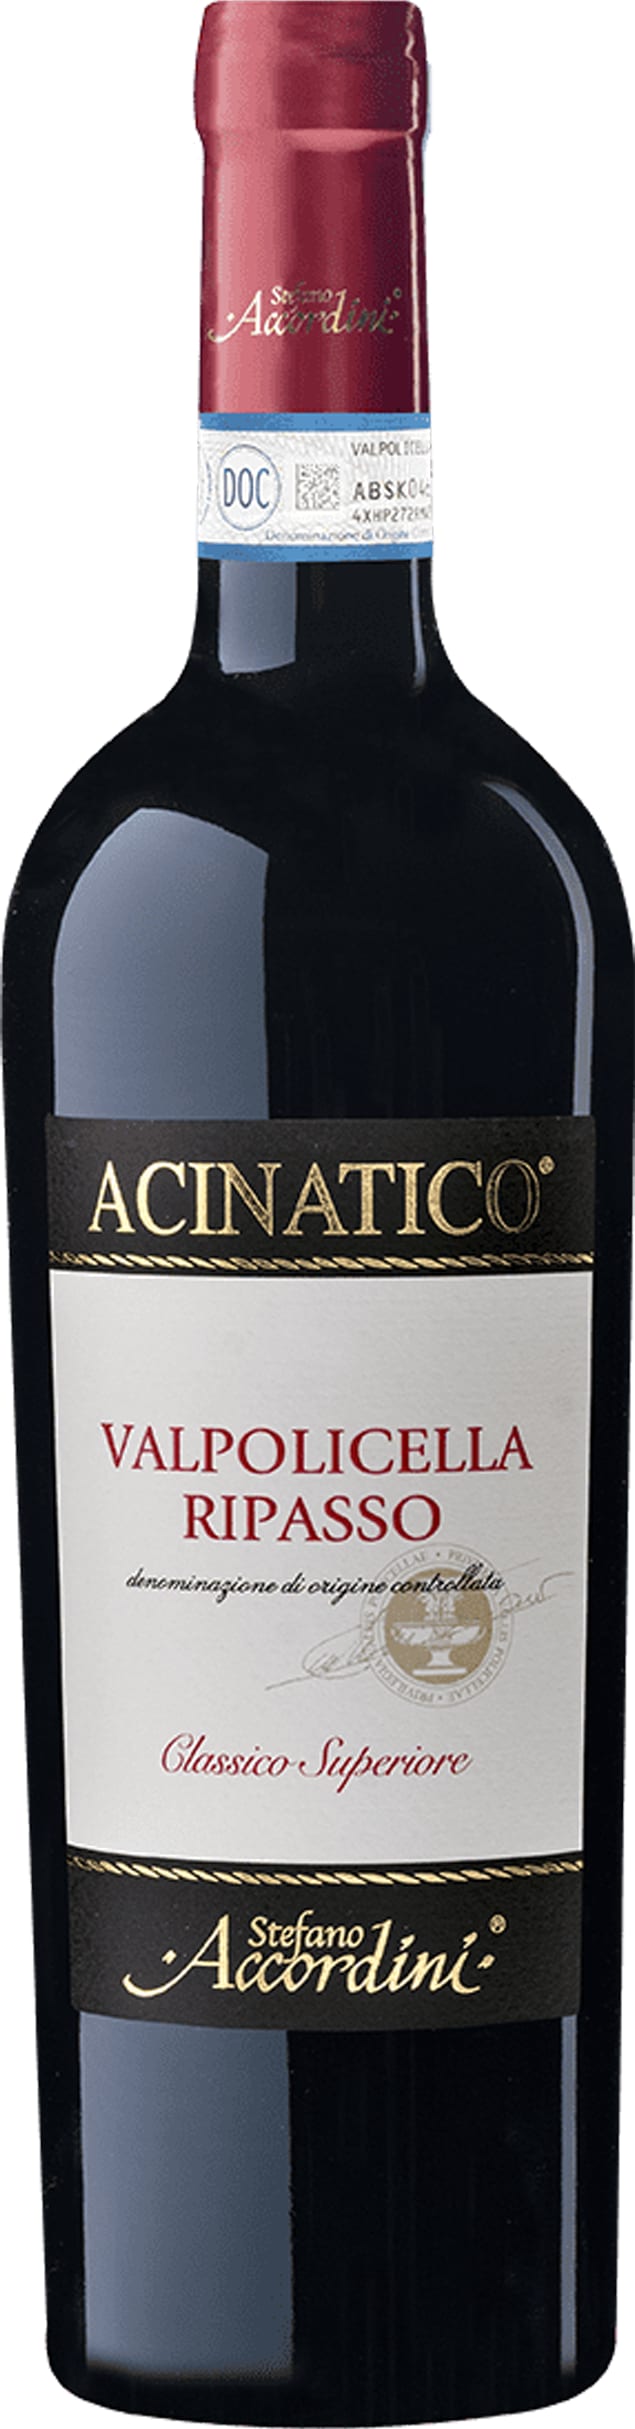 Accordini Valpolicella Classico Ripasso 2021 75cl - Buy Accordini Wines from GREAT WINES DIRECT wine shop